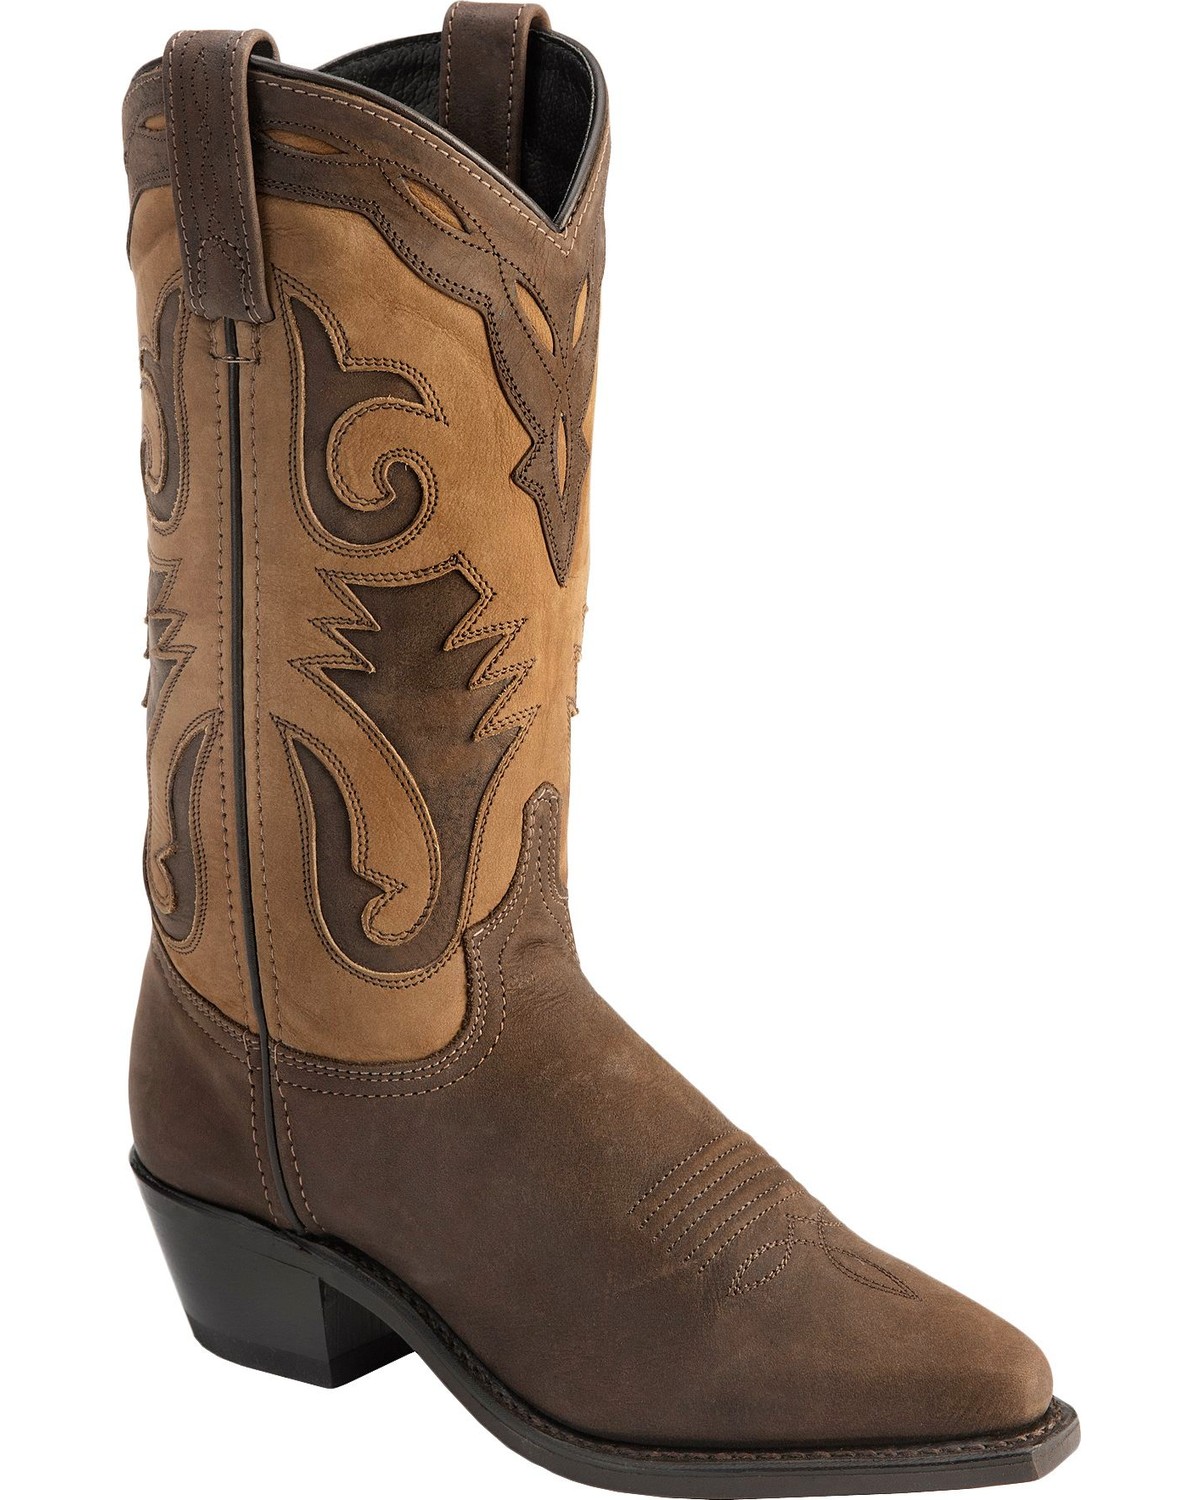 Sage Boots by Abilene Women's 2-Tone Cutout Western